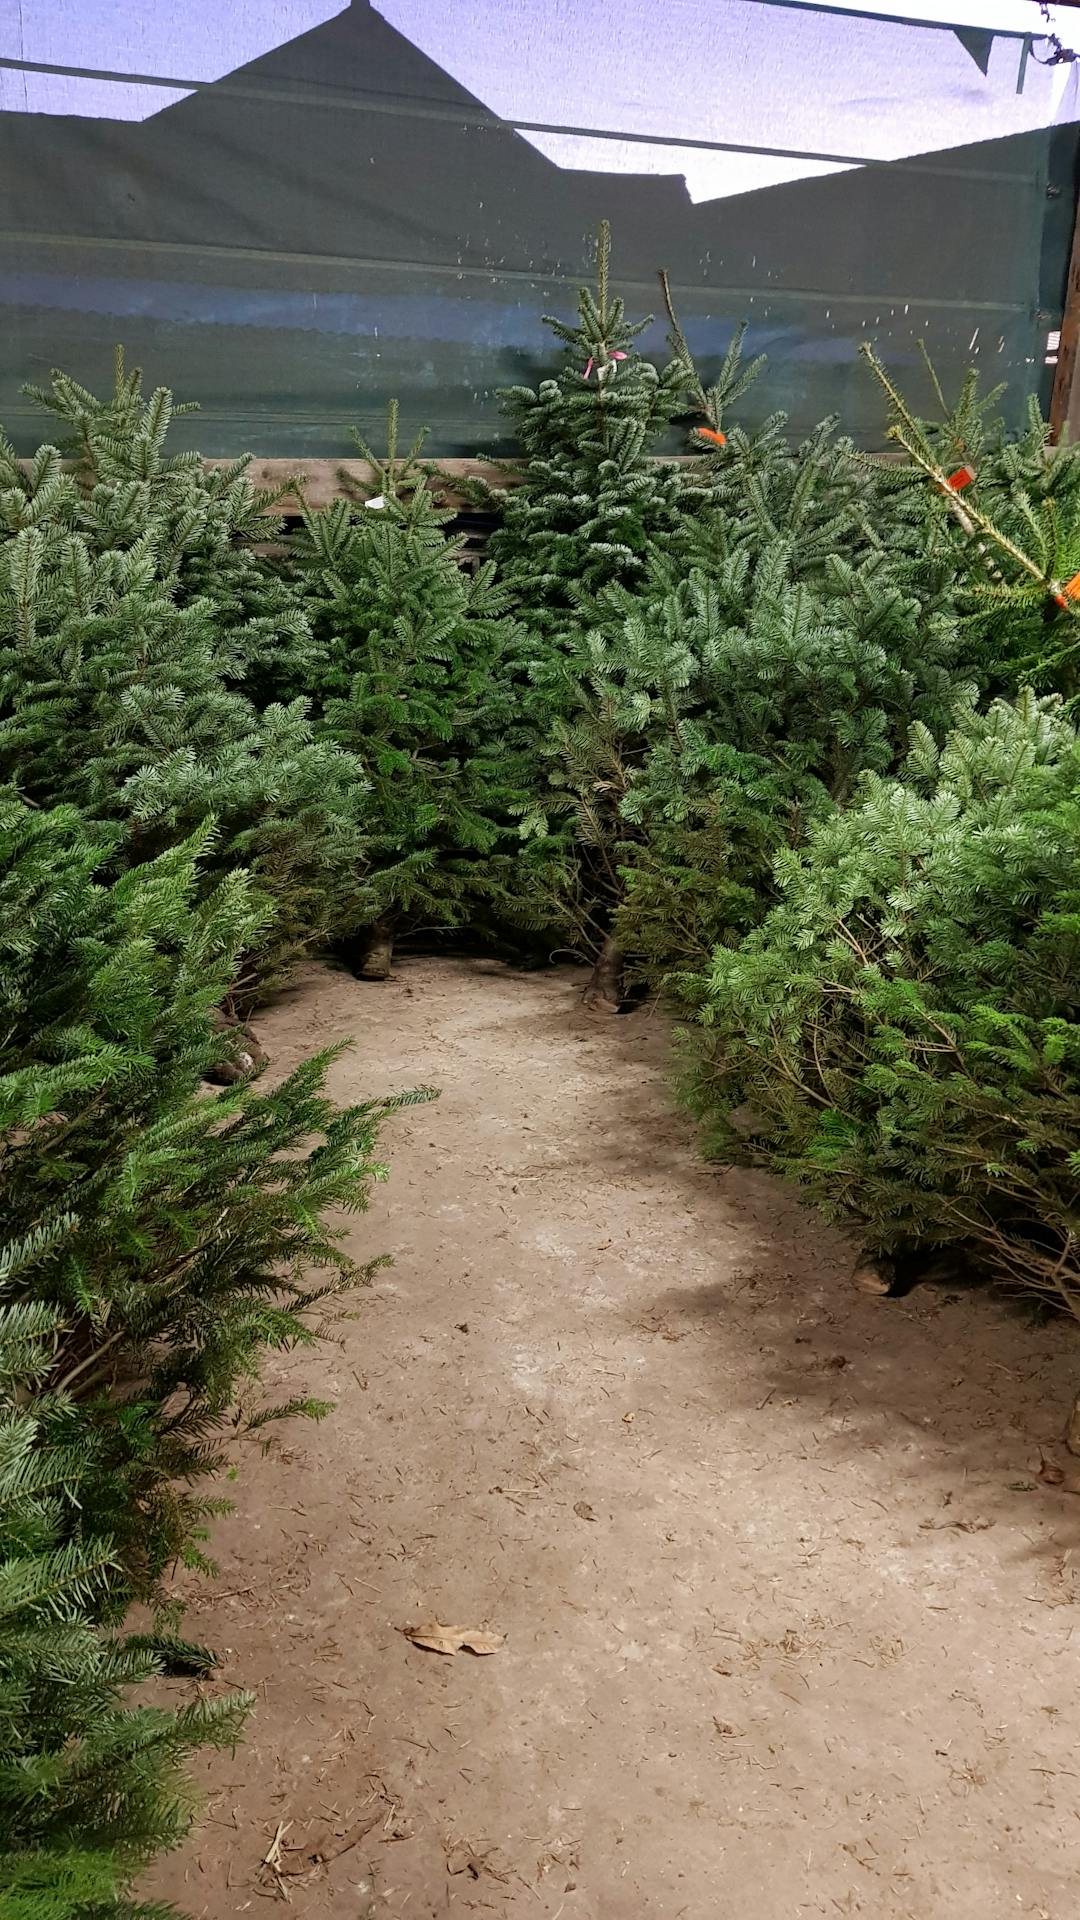 Hall Farm Christmas Shop & Christmas Trees - image 1